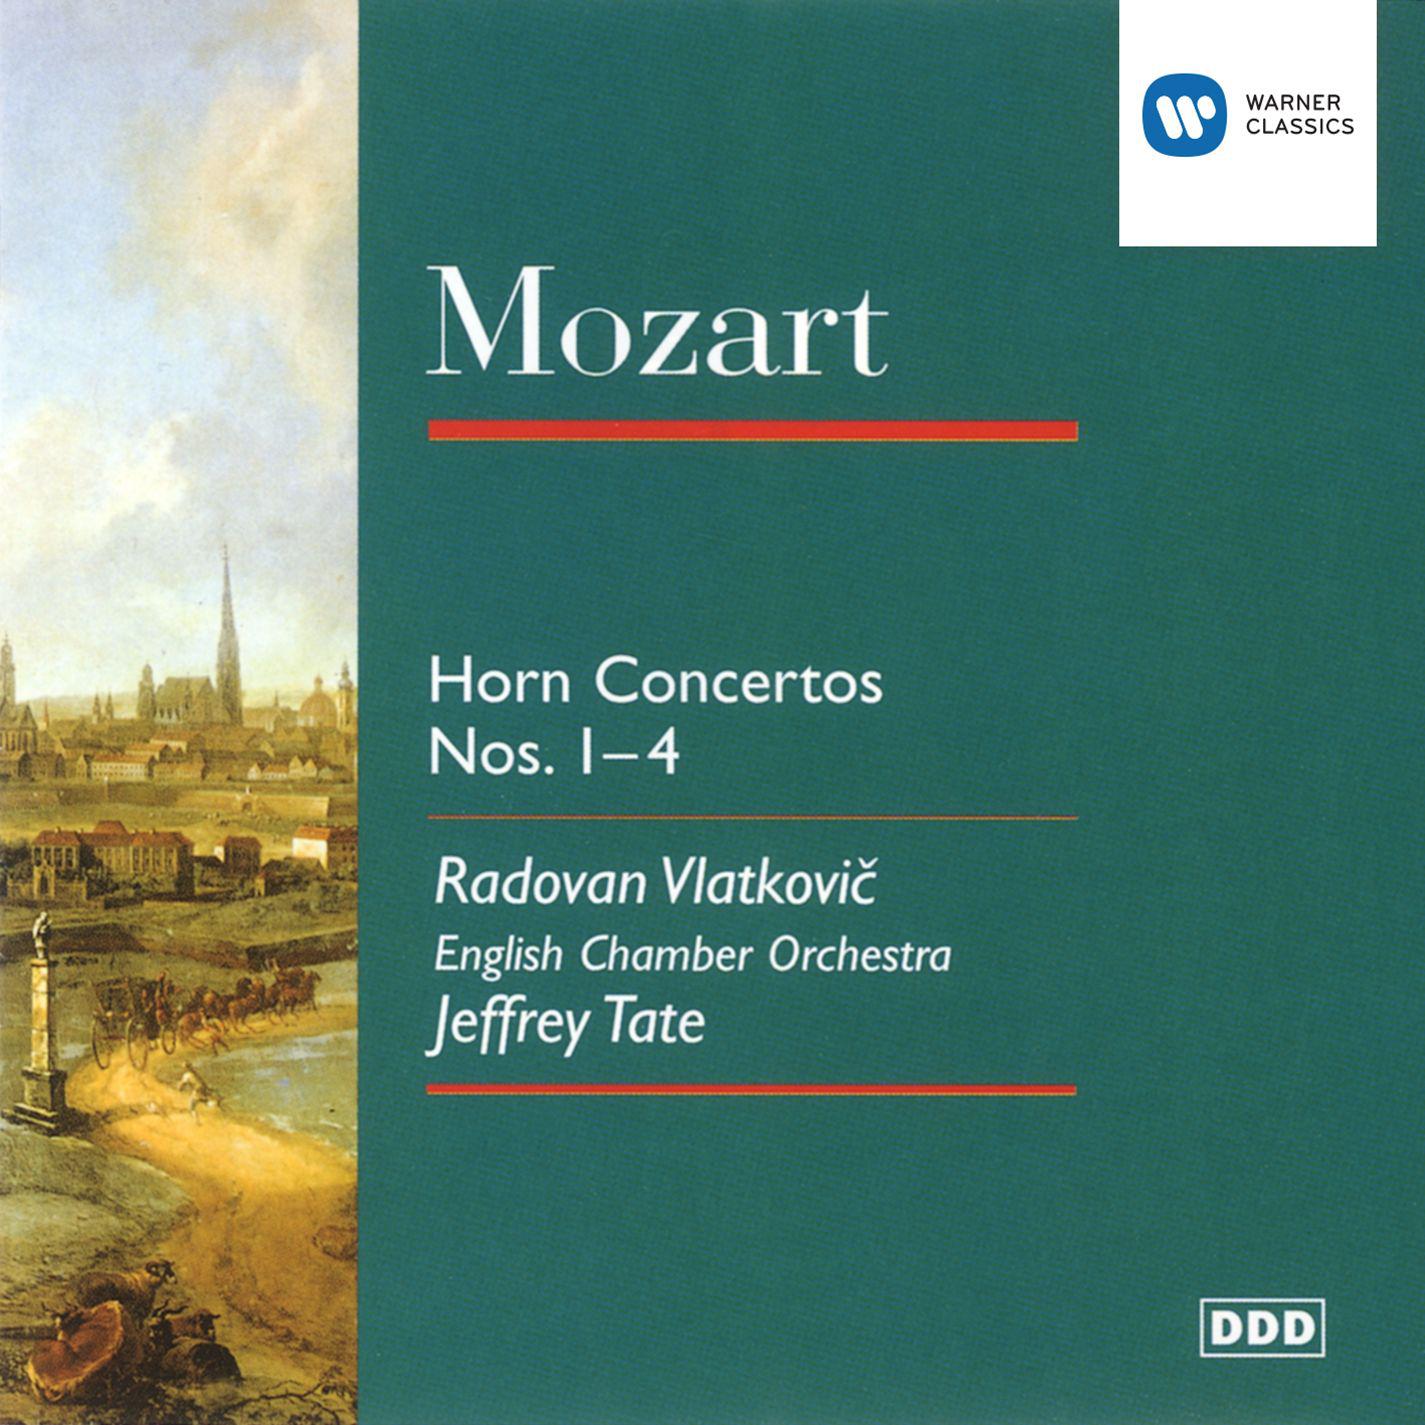 Horn Concerto No. 2 in E flat K417: III. Rondo